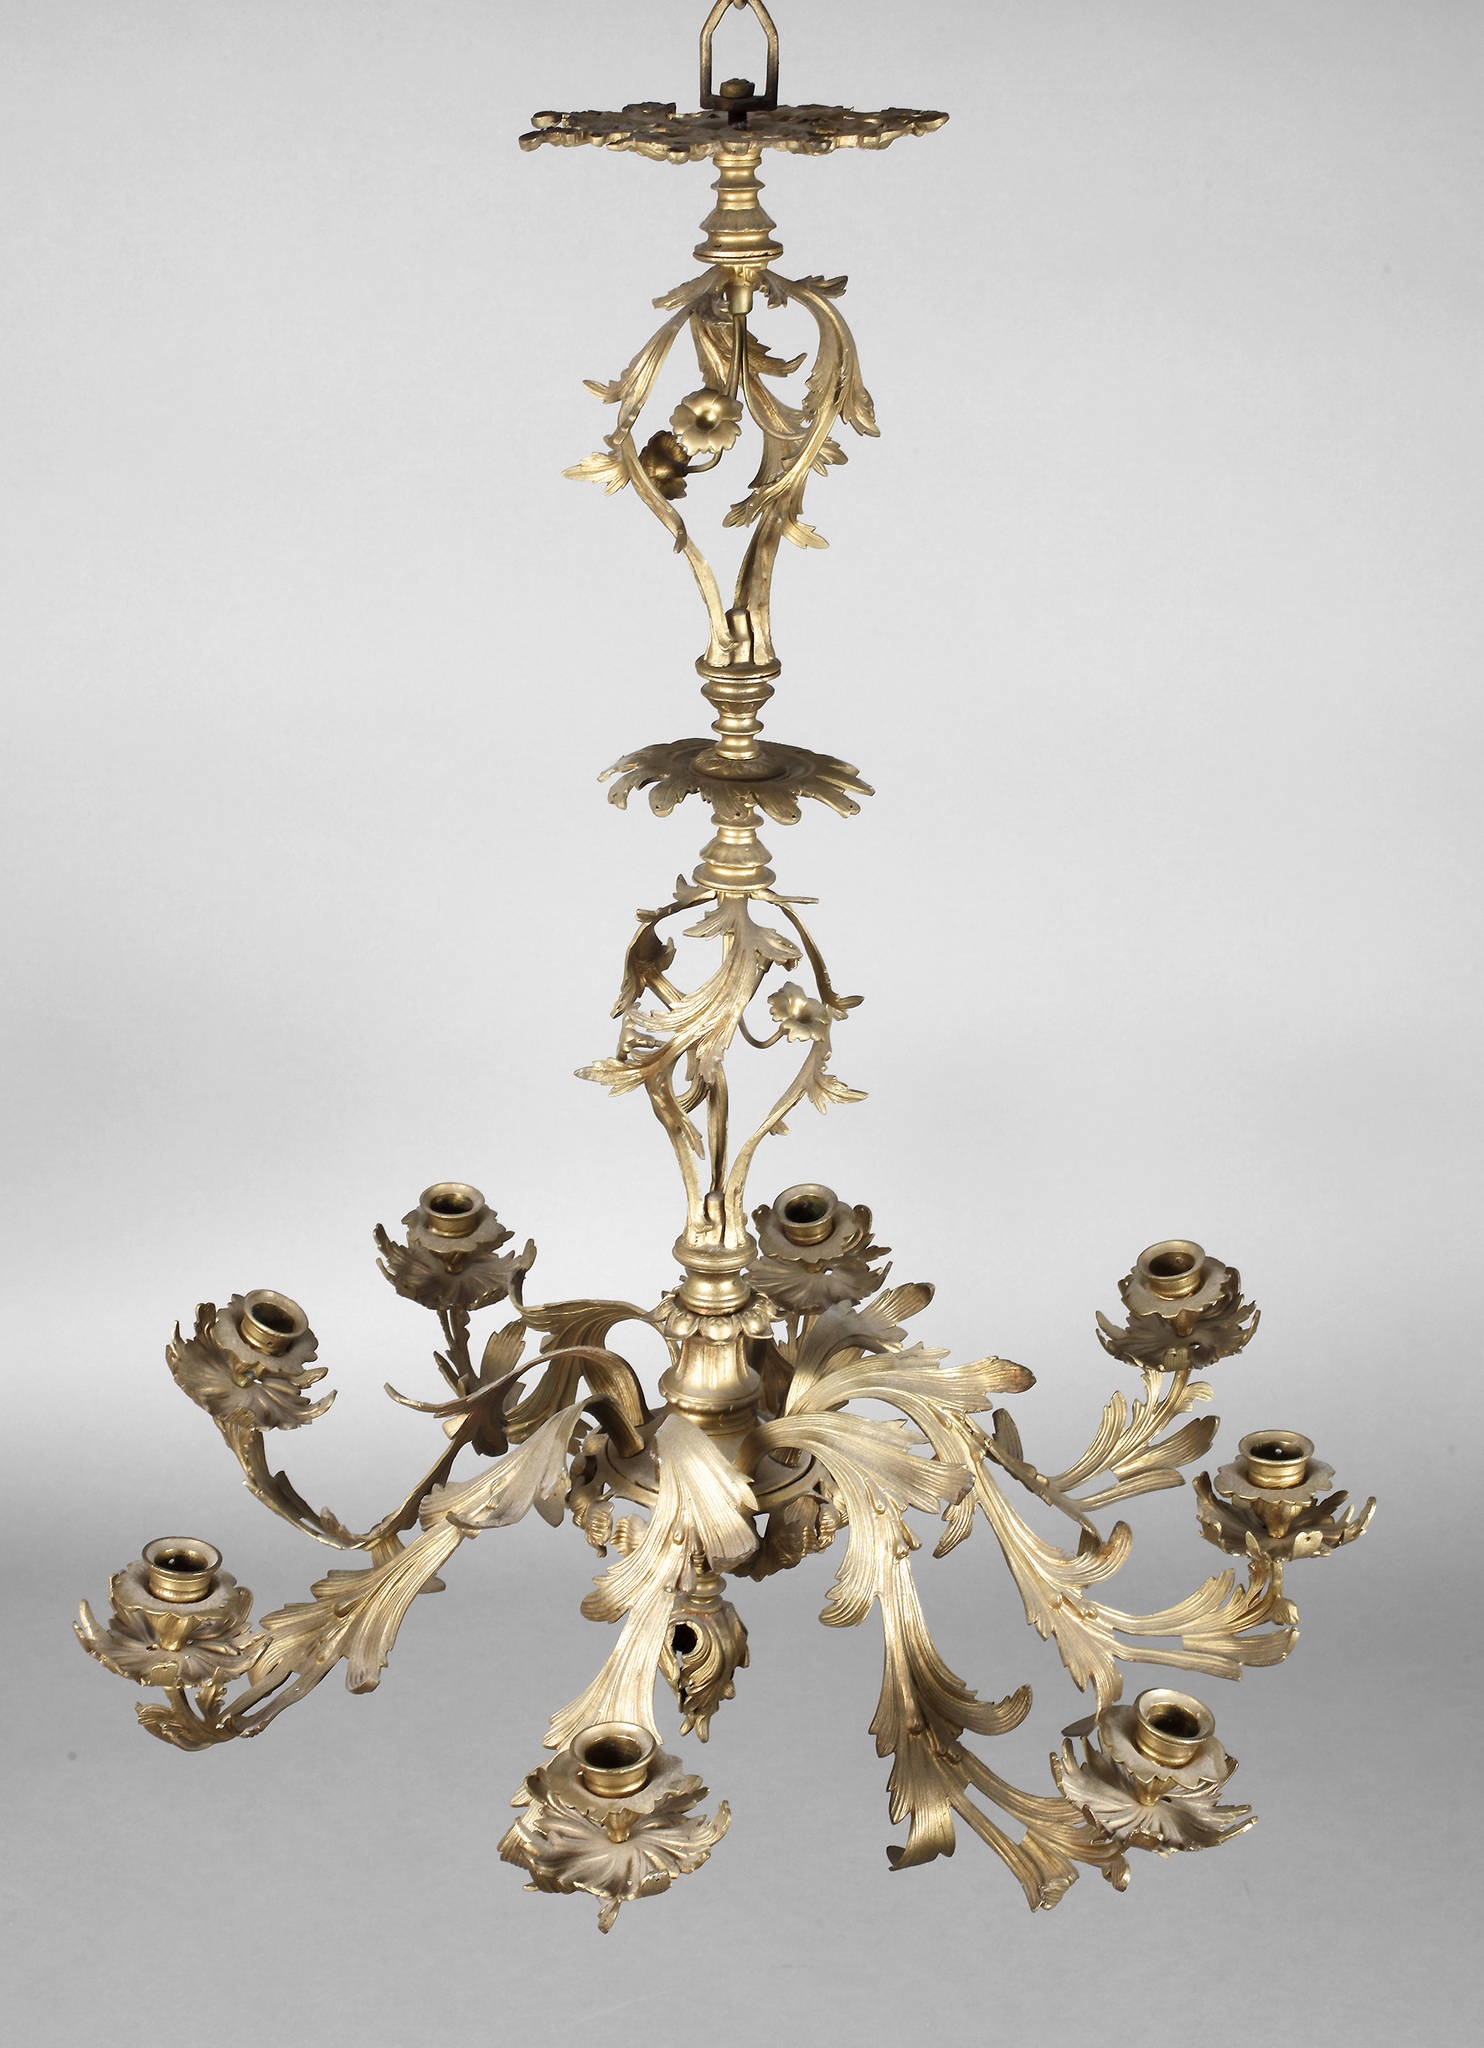 Große Deckenkrone um 1890, Bronze vergoldet, überaus reich floral verziertes Gestell mit durchbrochen gearbeiteten Partien, acht s-förmig geschwungene Leuchterarme in Blattform mit aufgesetzten Kerzentüllen und Tropfschalen in Blütenoptik, zwei Arme